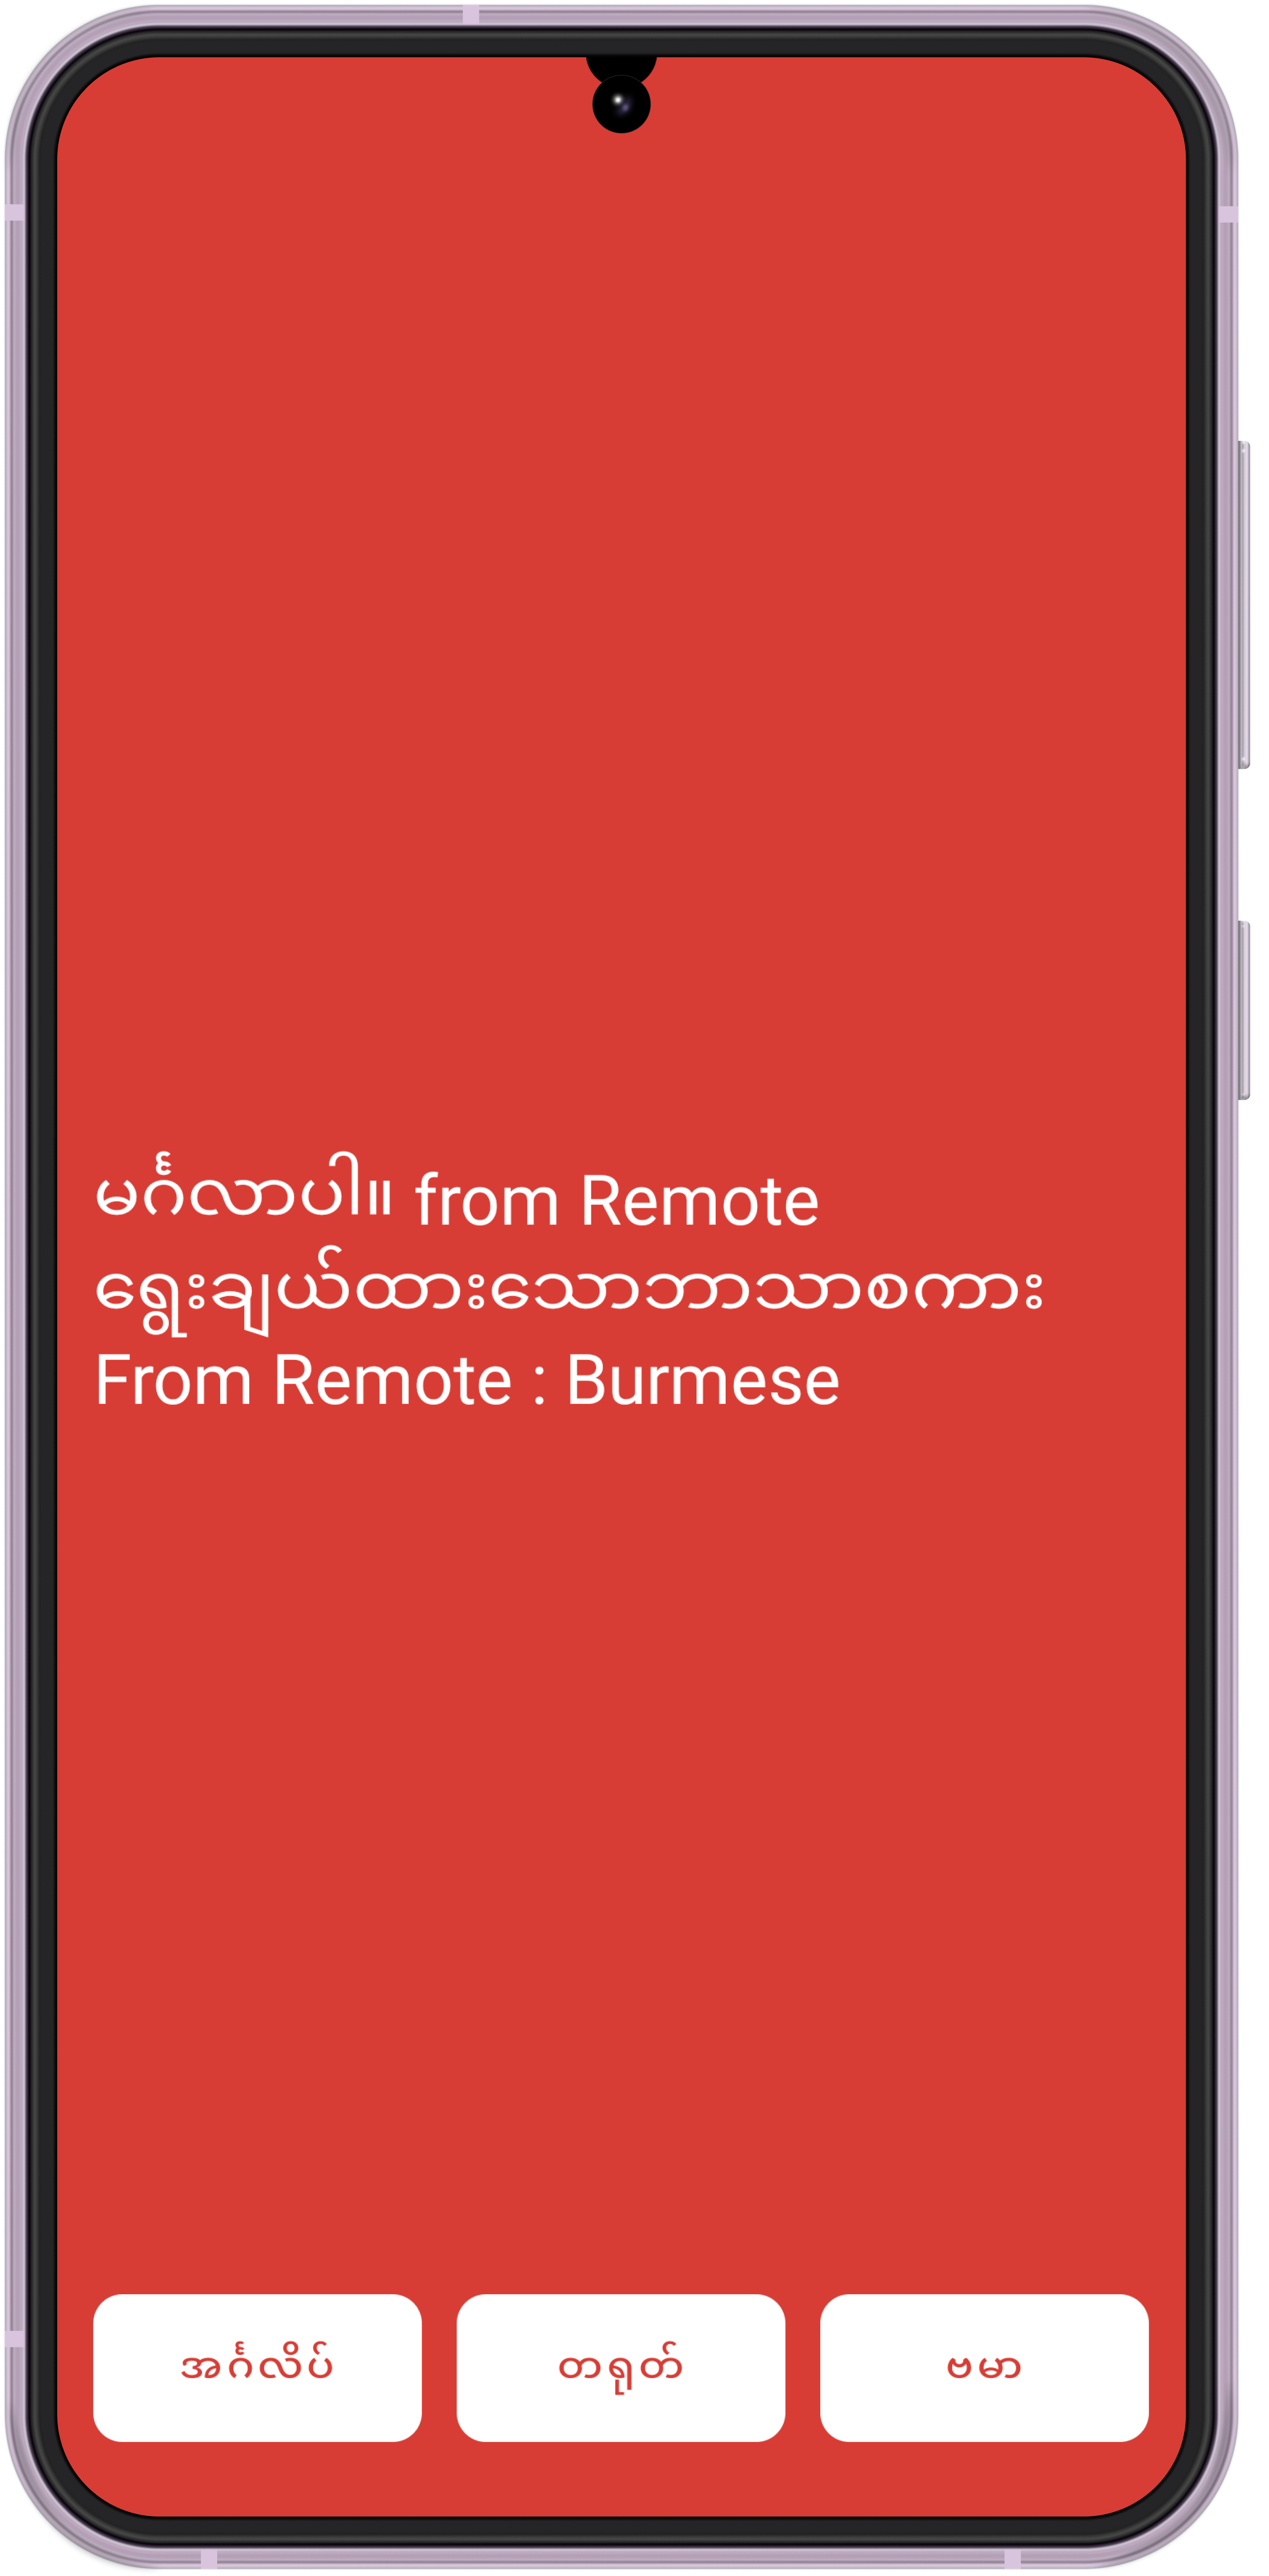 Demo App UI - Burmese